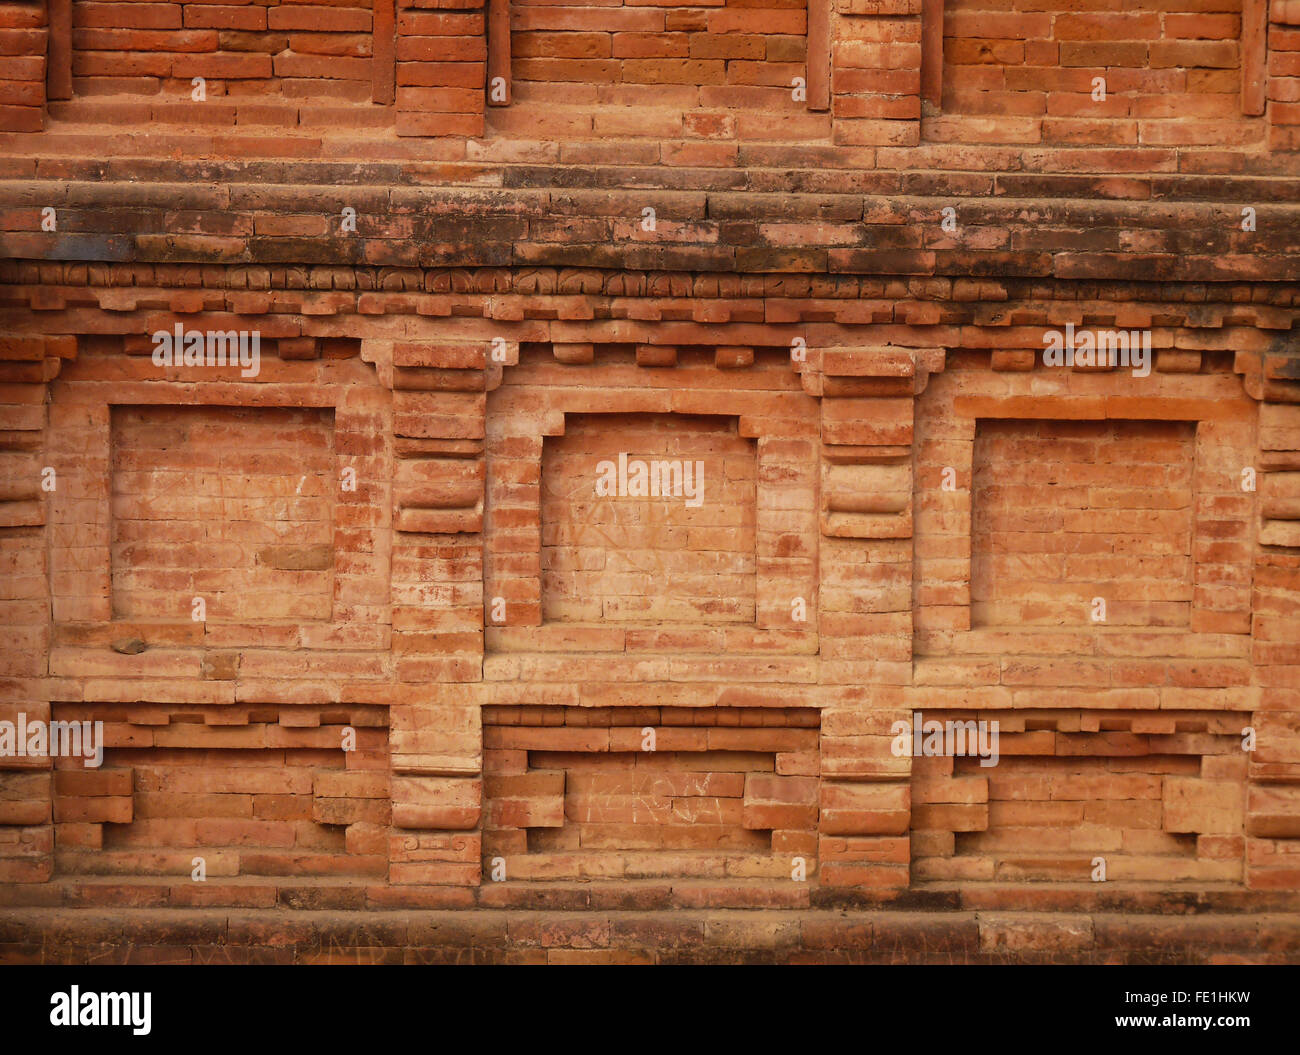 Nahaufnahme einer Wand an der Stelle der ausgegrabenen Ruinen von Universität von Nalanda oder Nalanda Mahavihara, einem großen buddhistischen Kloster Stockfoto